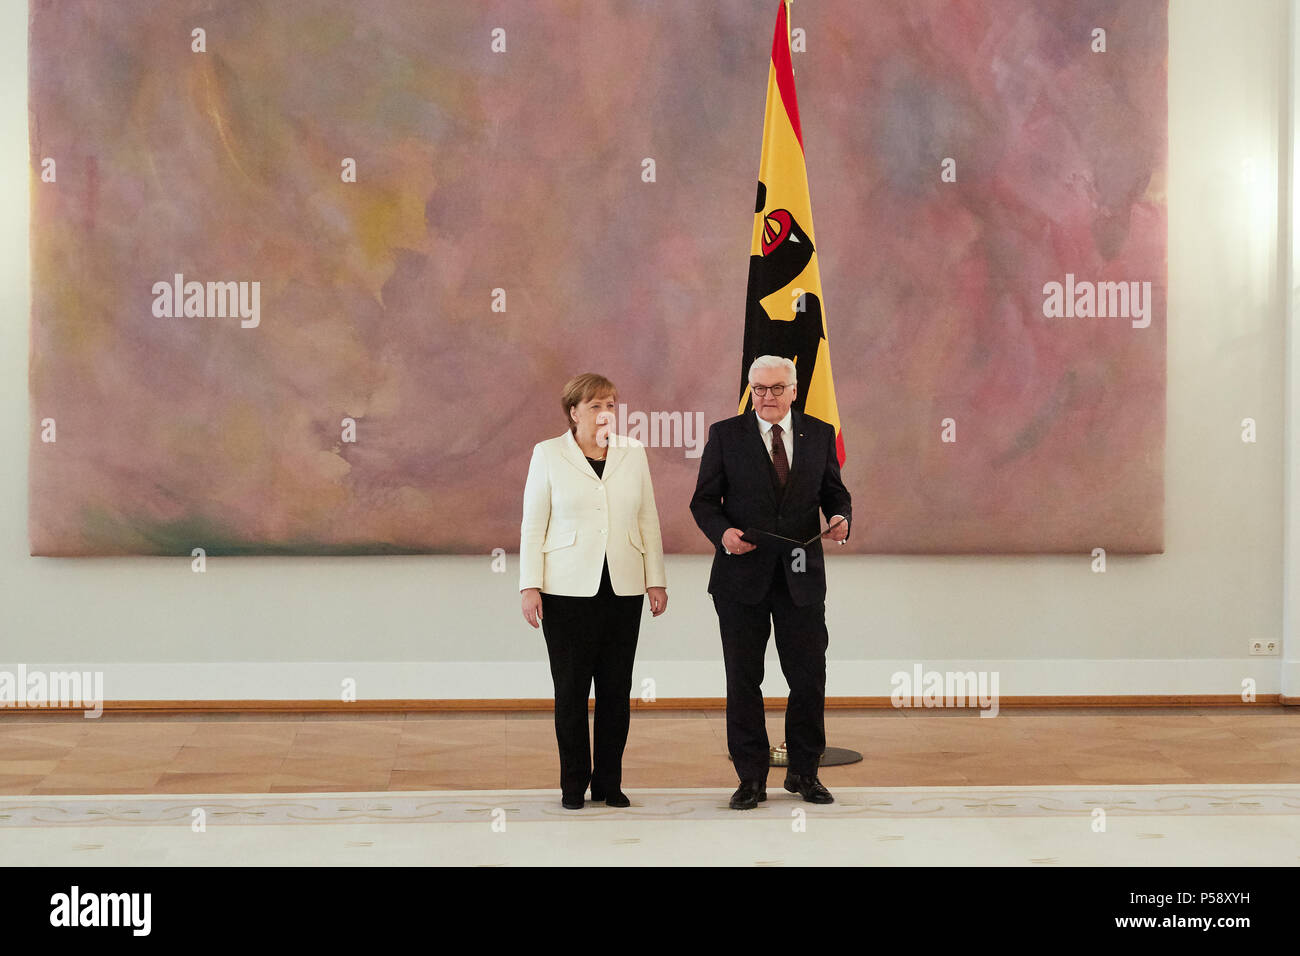 Berlin, Deutschland - Ernennung von Bundeskanzler Dr. Ing. Angela Merkel durch den Bundespräsidenten Dr. Frank-Walter Steinmeier in der Großen Halle des Bellevue Palace. Stockfoto